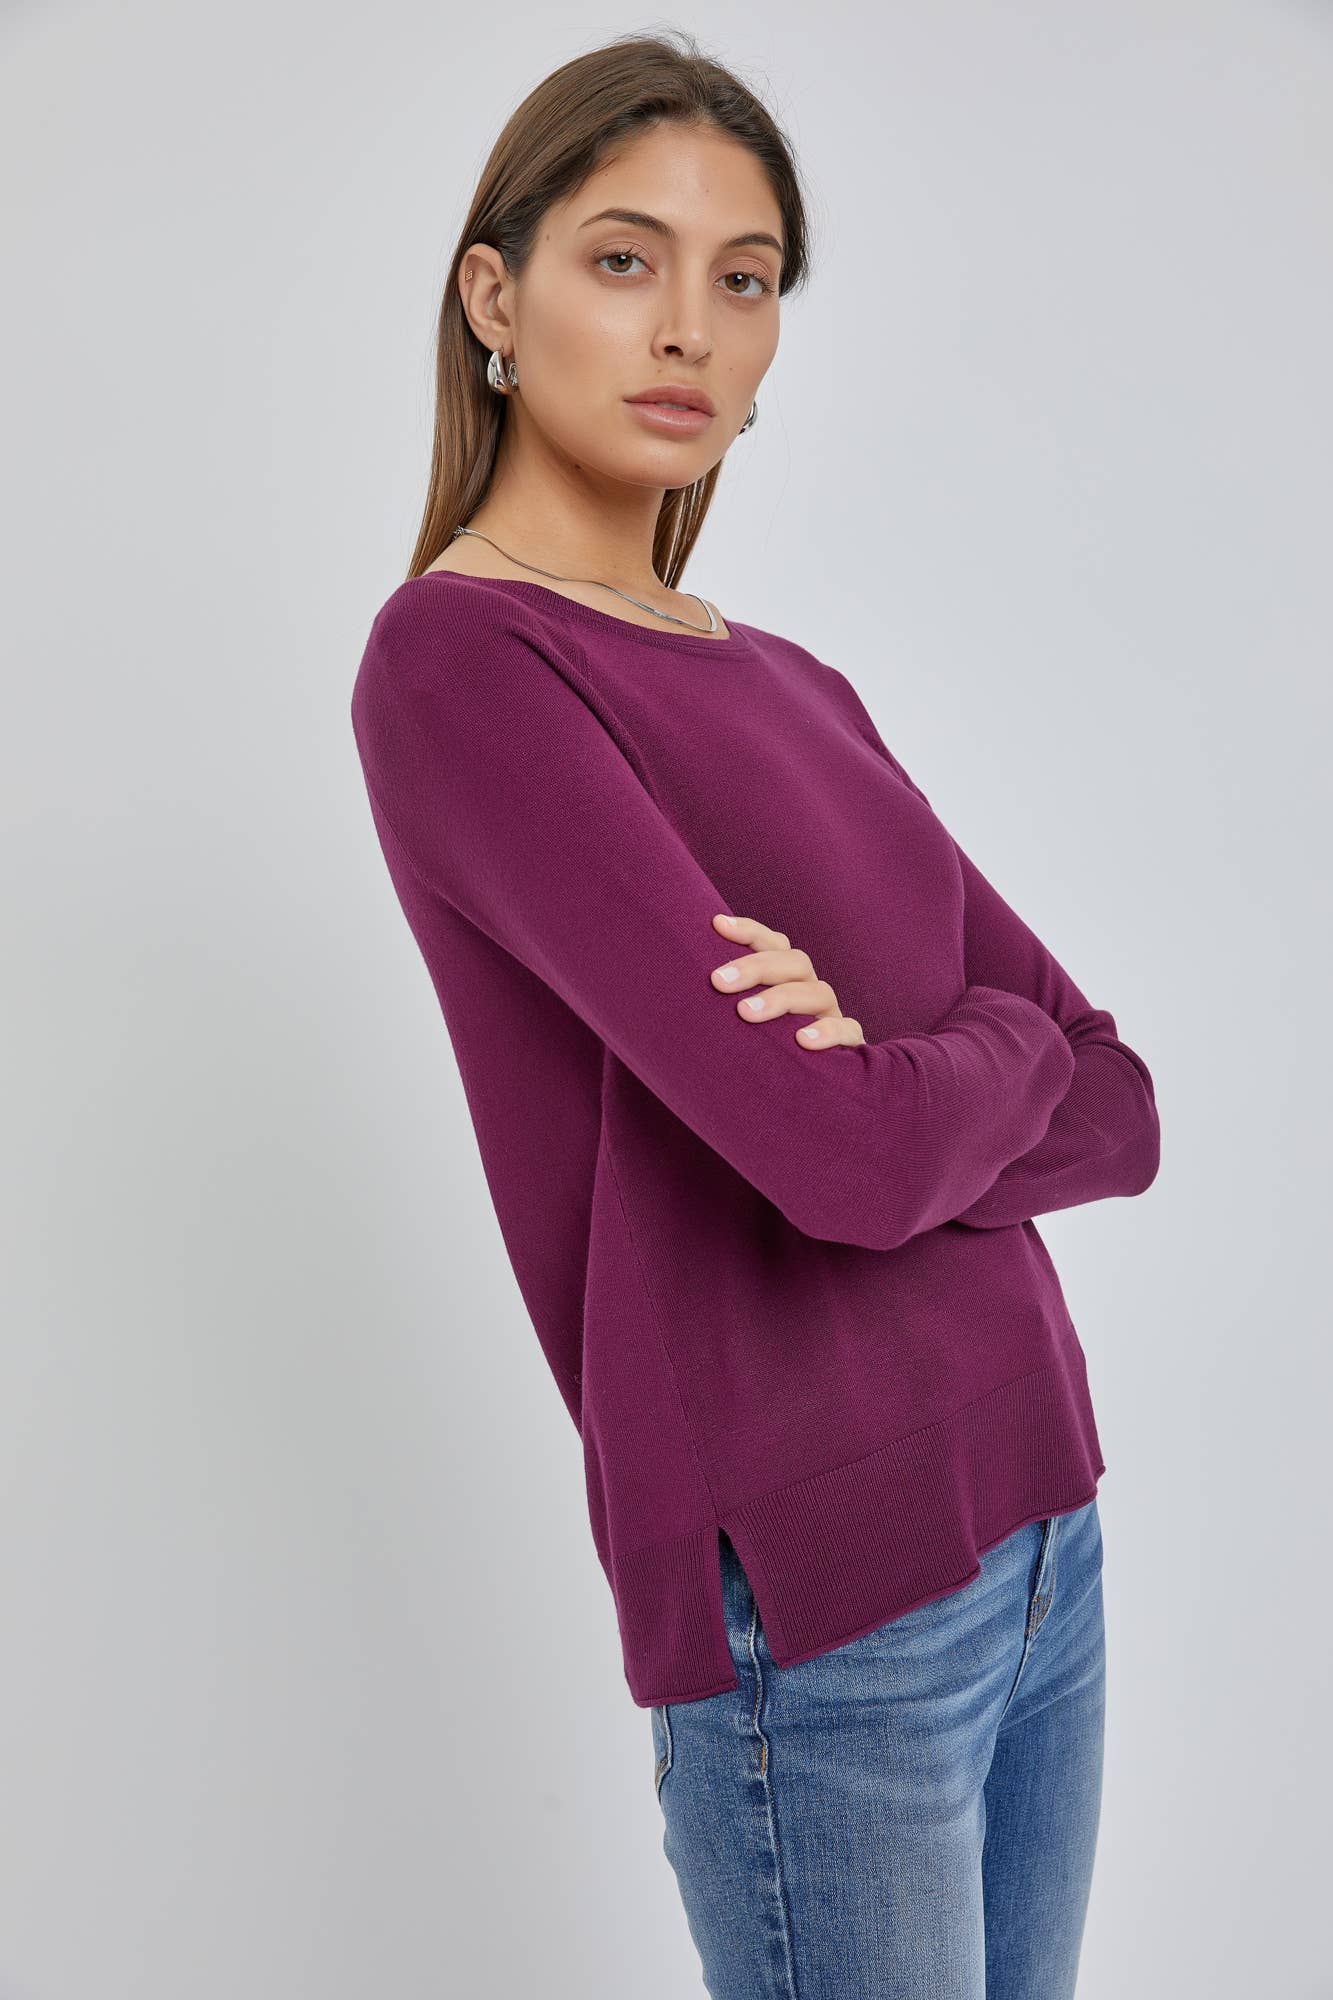 The Camille Sweater: Medium / Cobalt